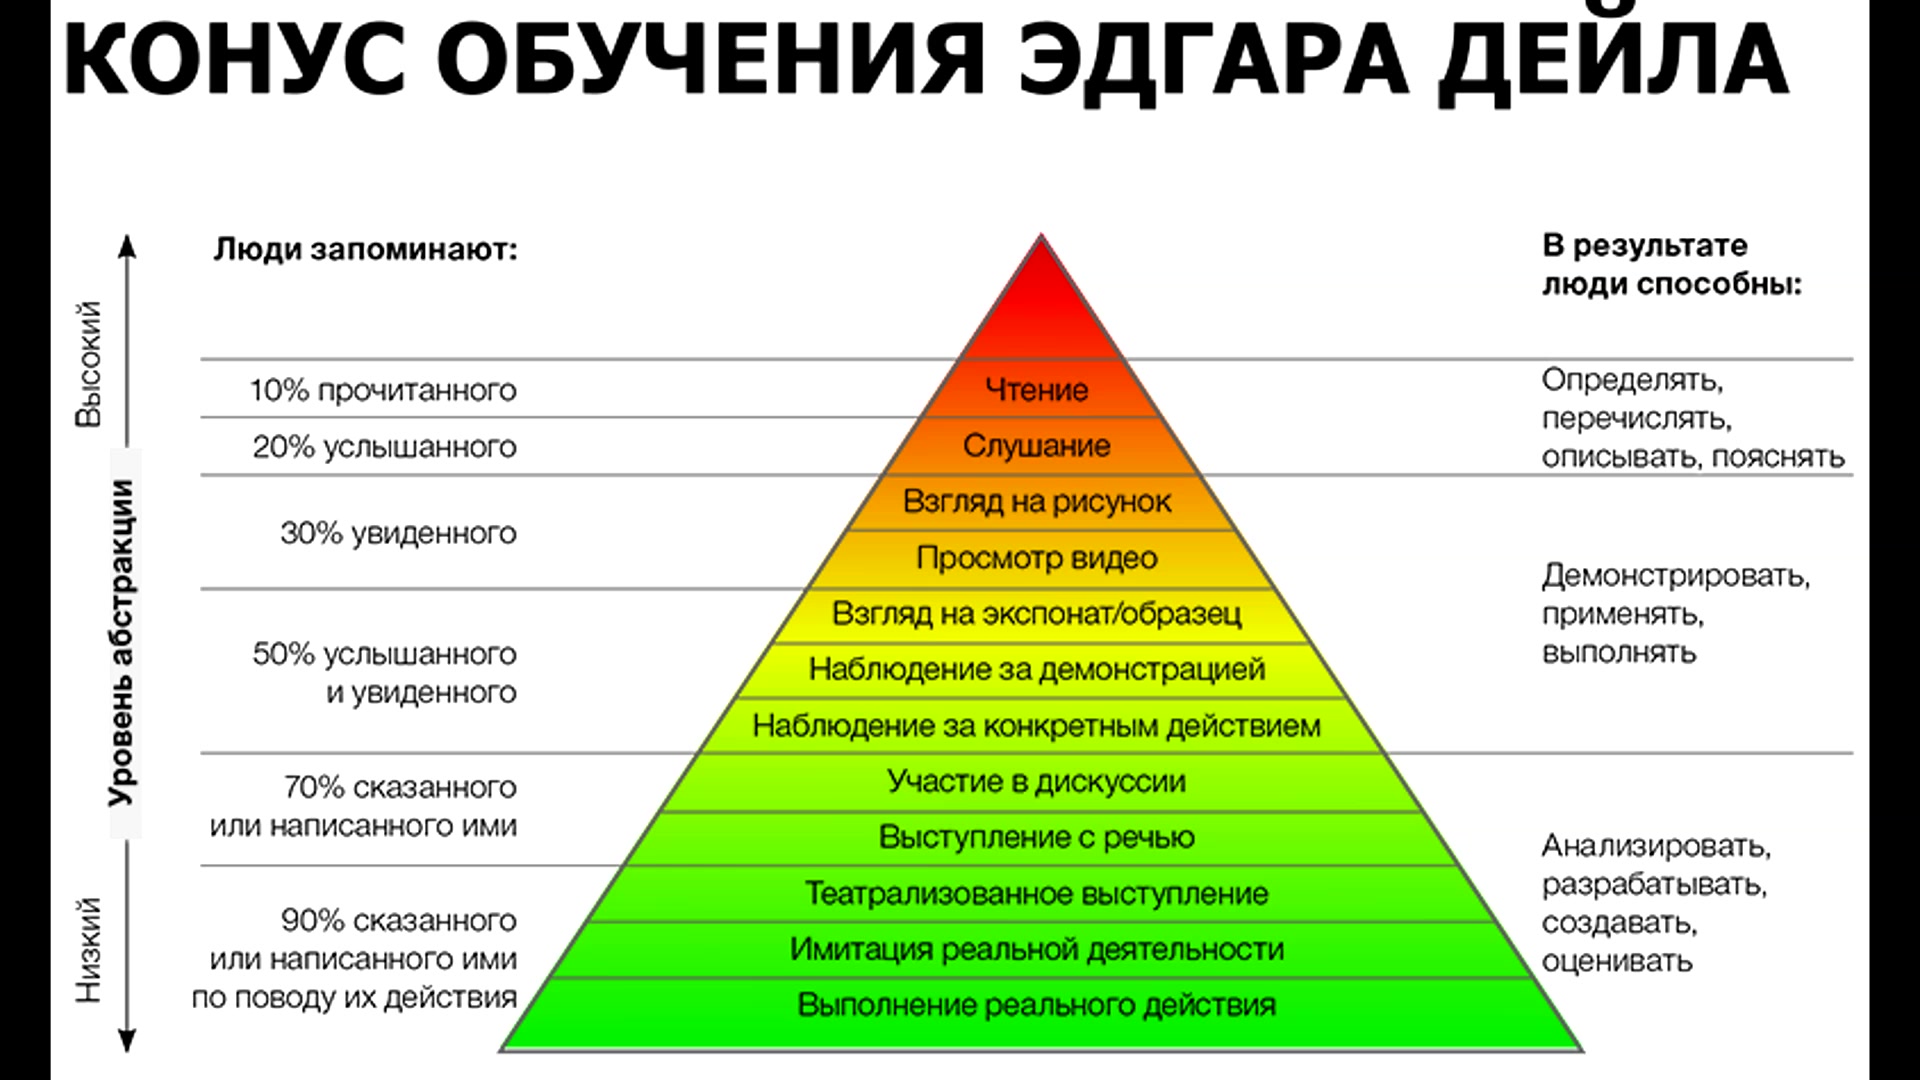 Наиболее эффективных средств обучения. Пирамида обучения Эдгара Дейла. Конус обучения Эдгара Дейла пирамида. Пирамидой обучения (конусом обучения Эдгара Дейла. Конус опыта Эдгара Дейла.